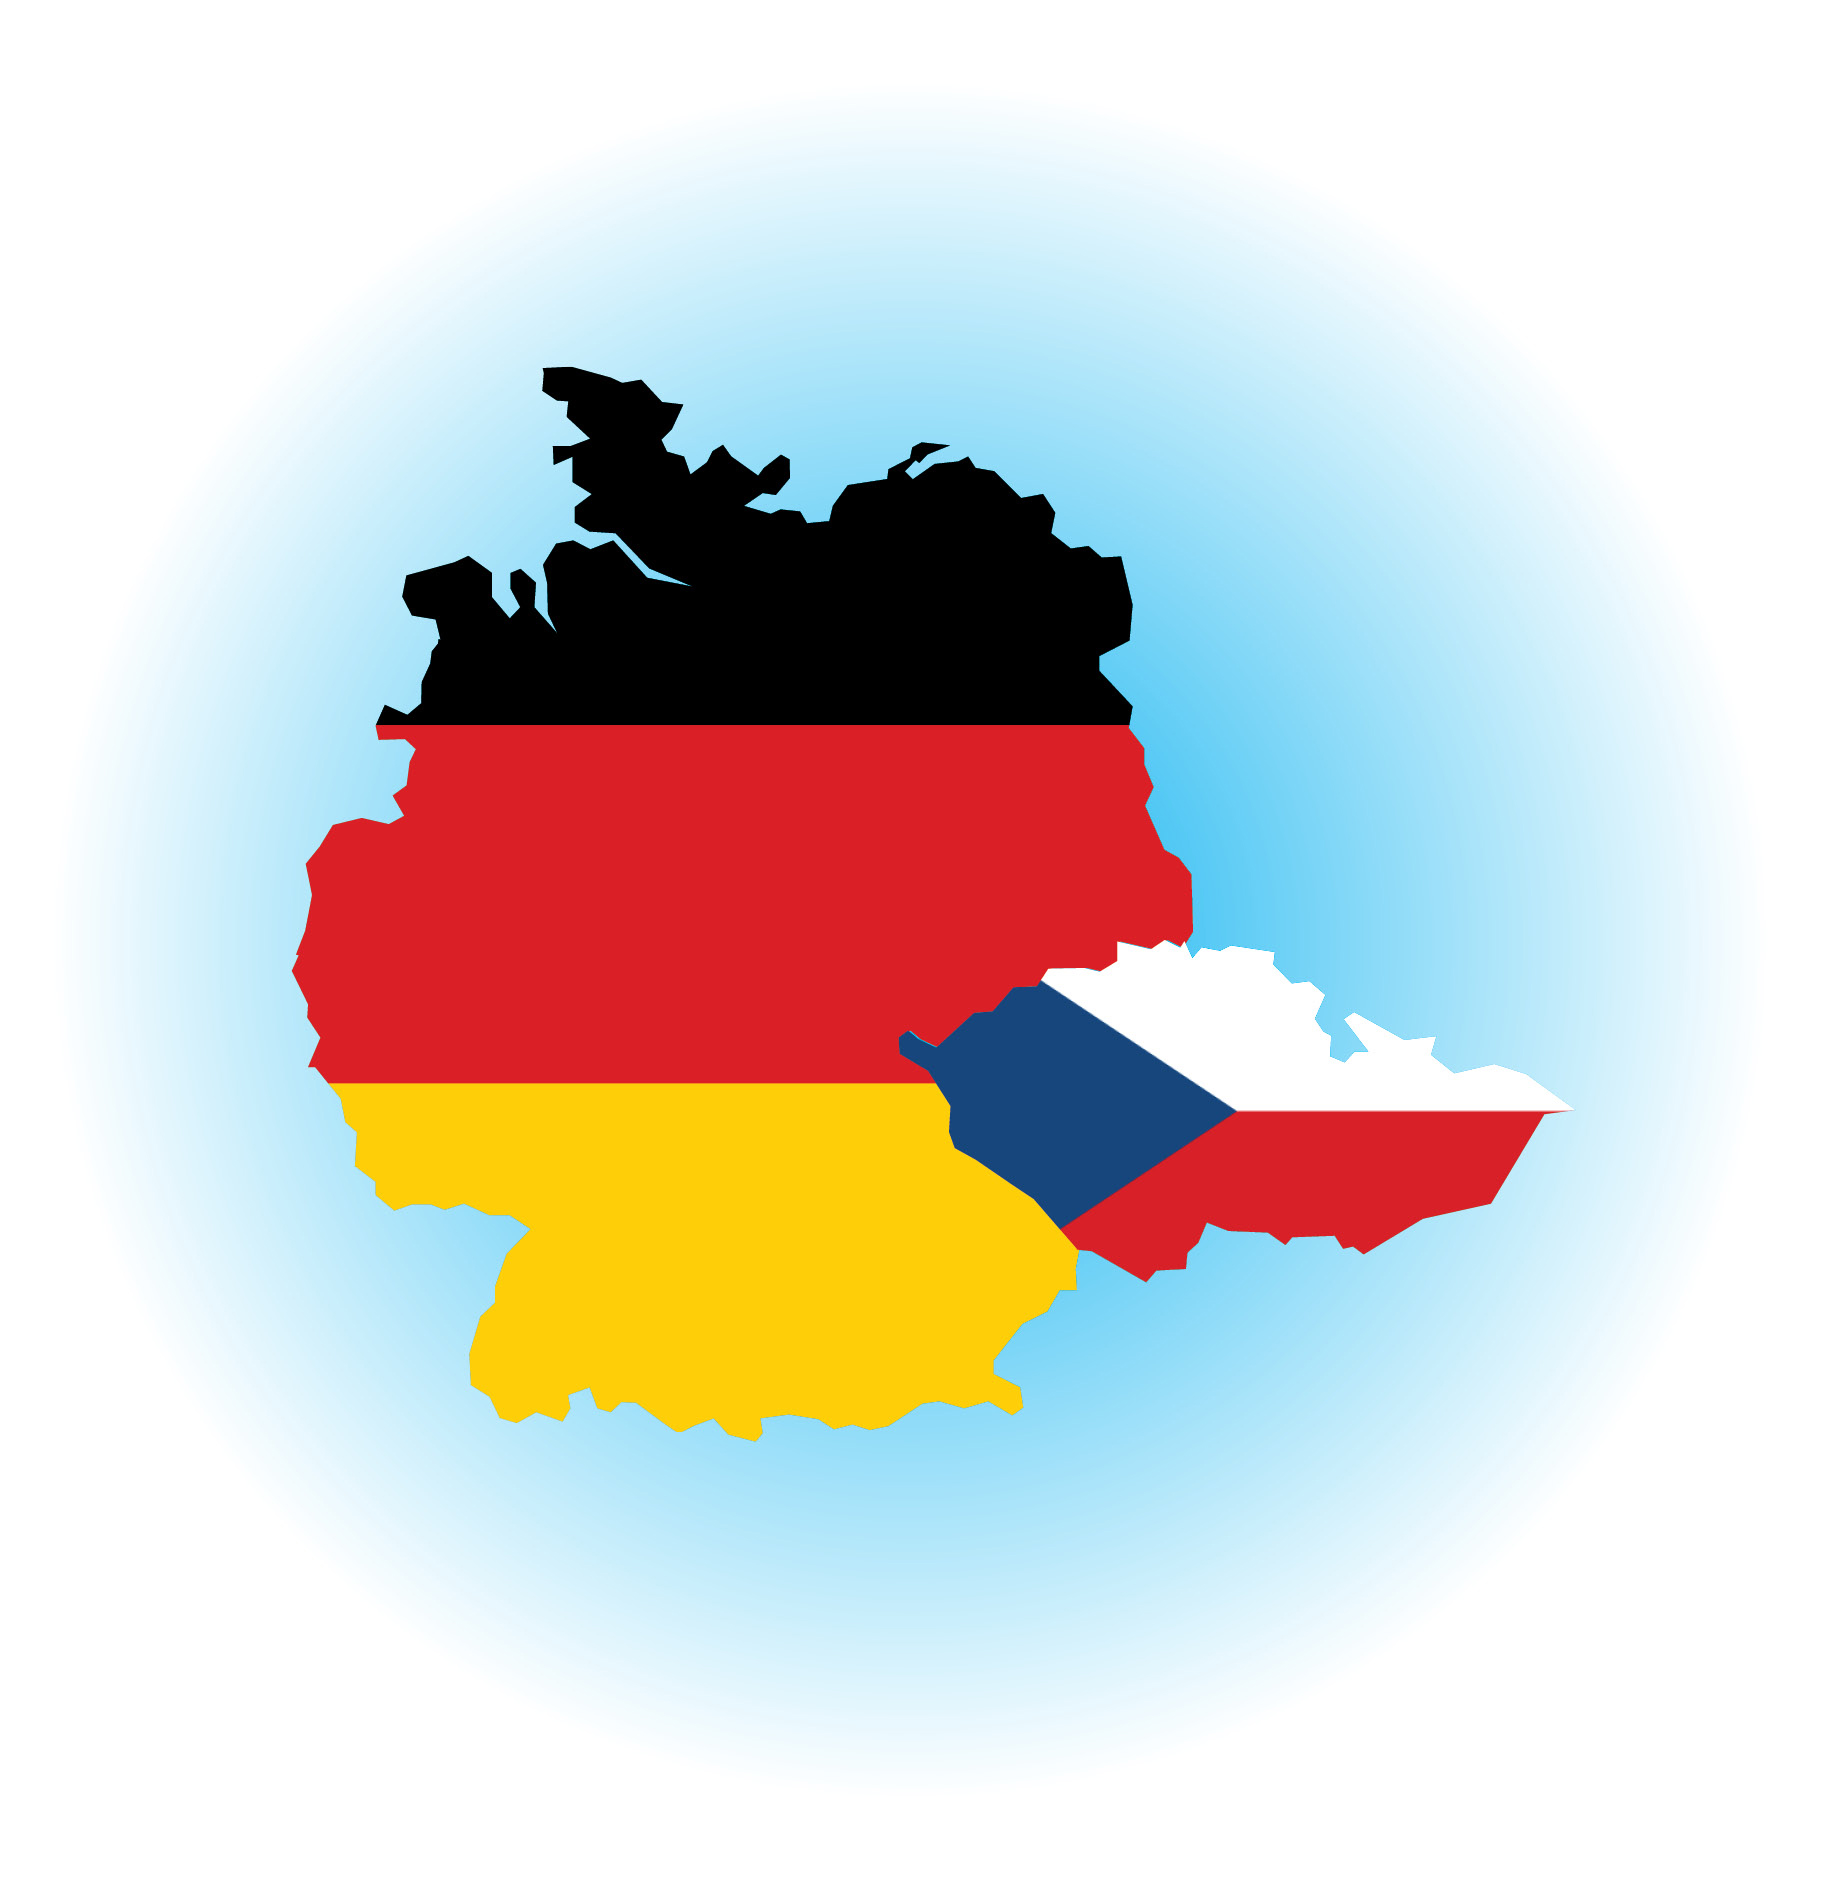 Komparativní analýzy systému pojištění Pflegeversichering v Německu (probíhající)